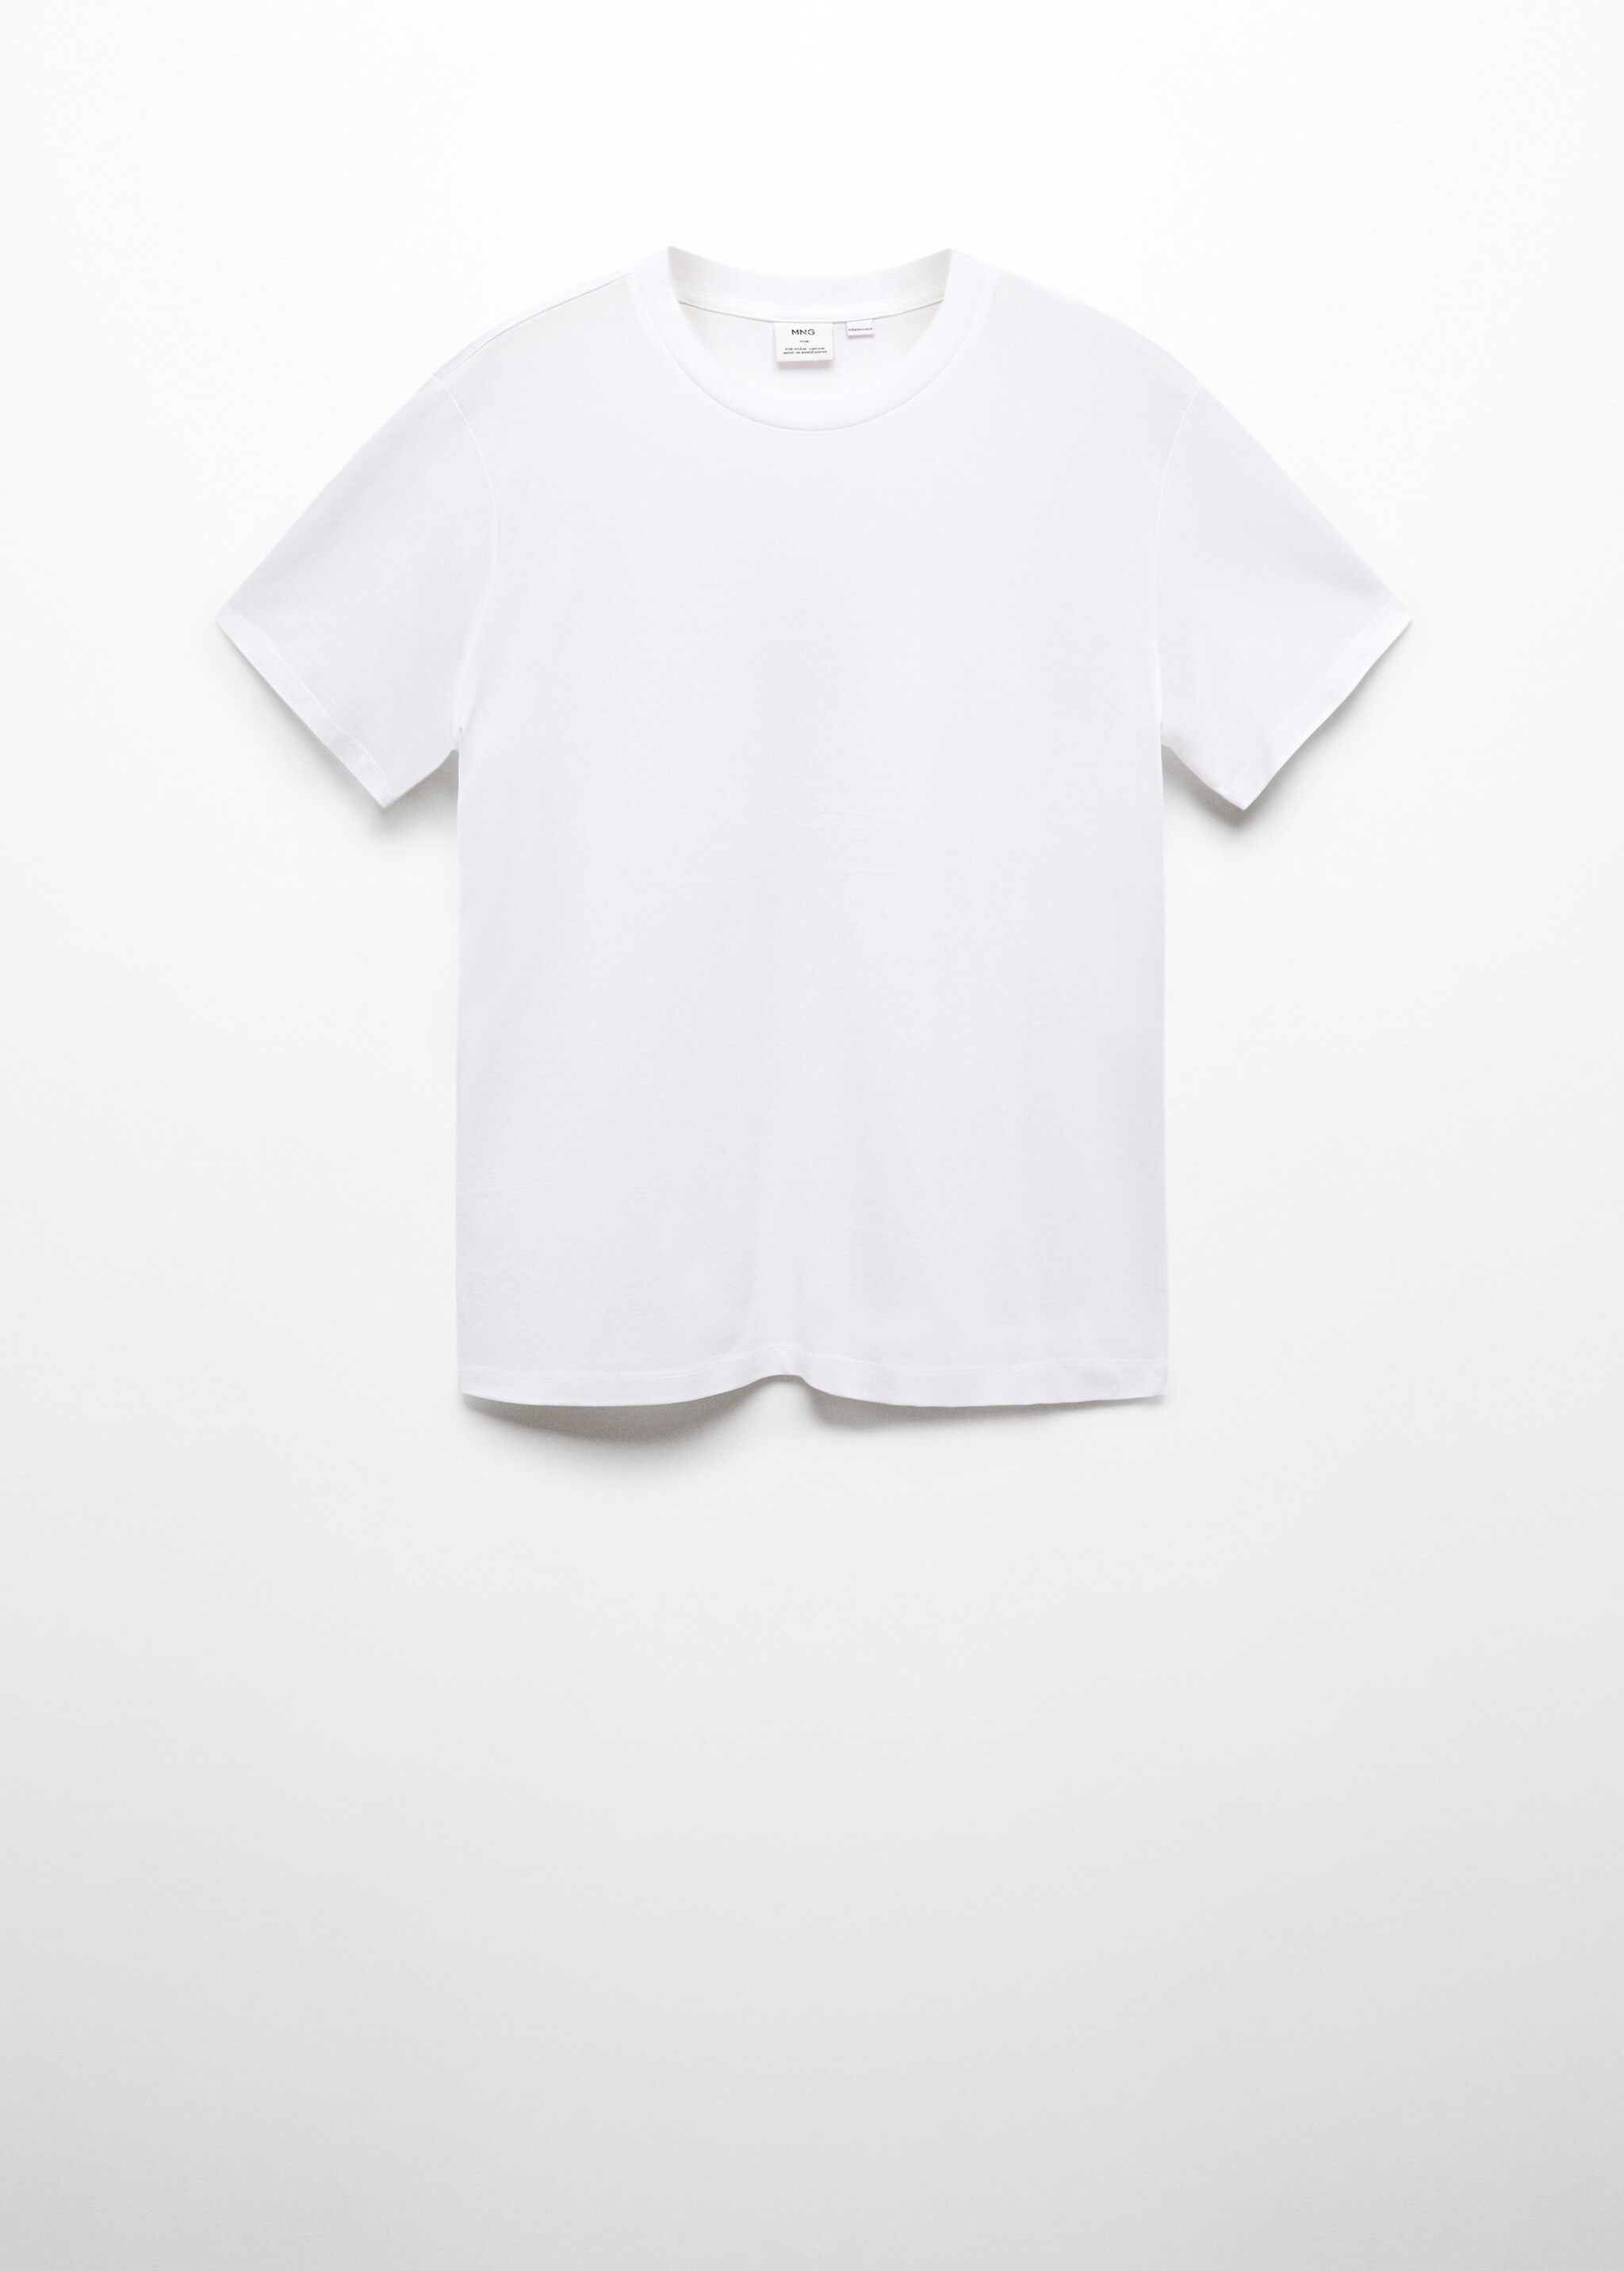 T-shirt slim-fit mercerizzata - Articolo senza modello